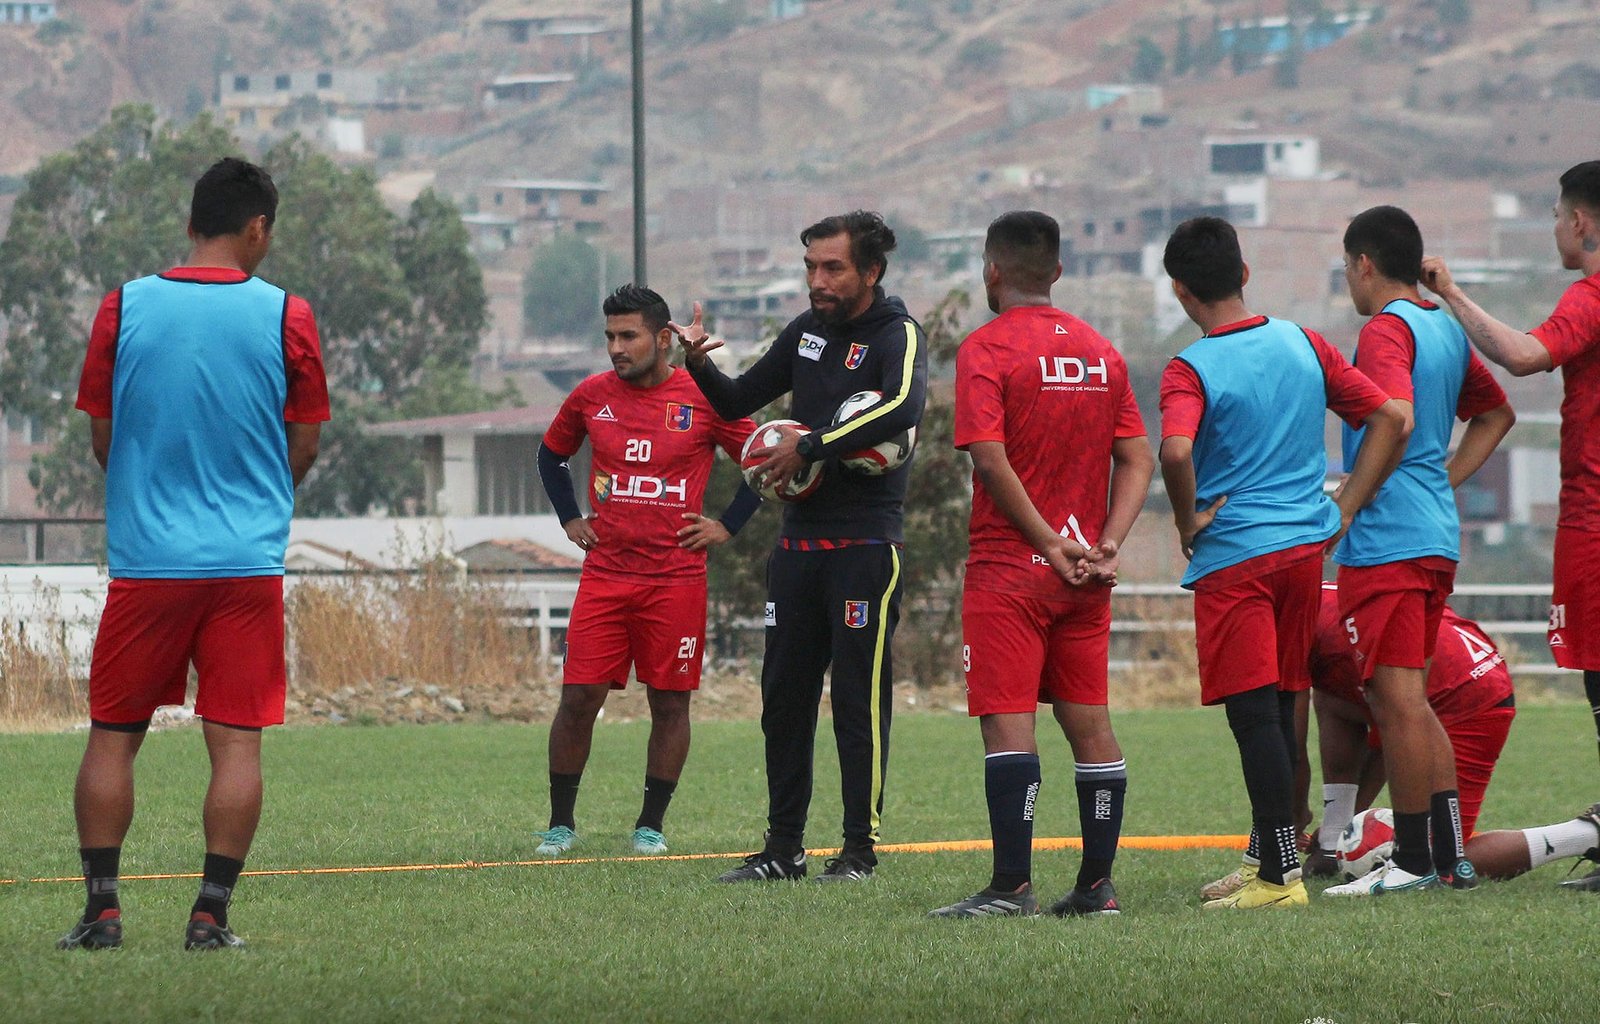 Liga 2: Alianza UDH aspira el primer boleto a la máxima categoría del fútbol peruano